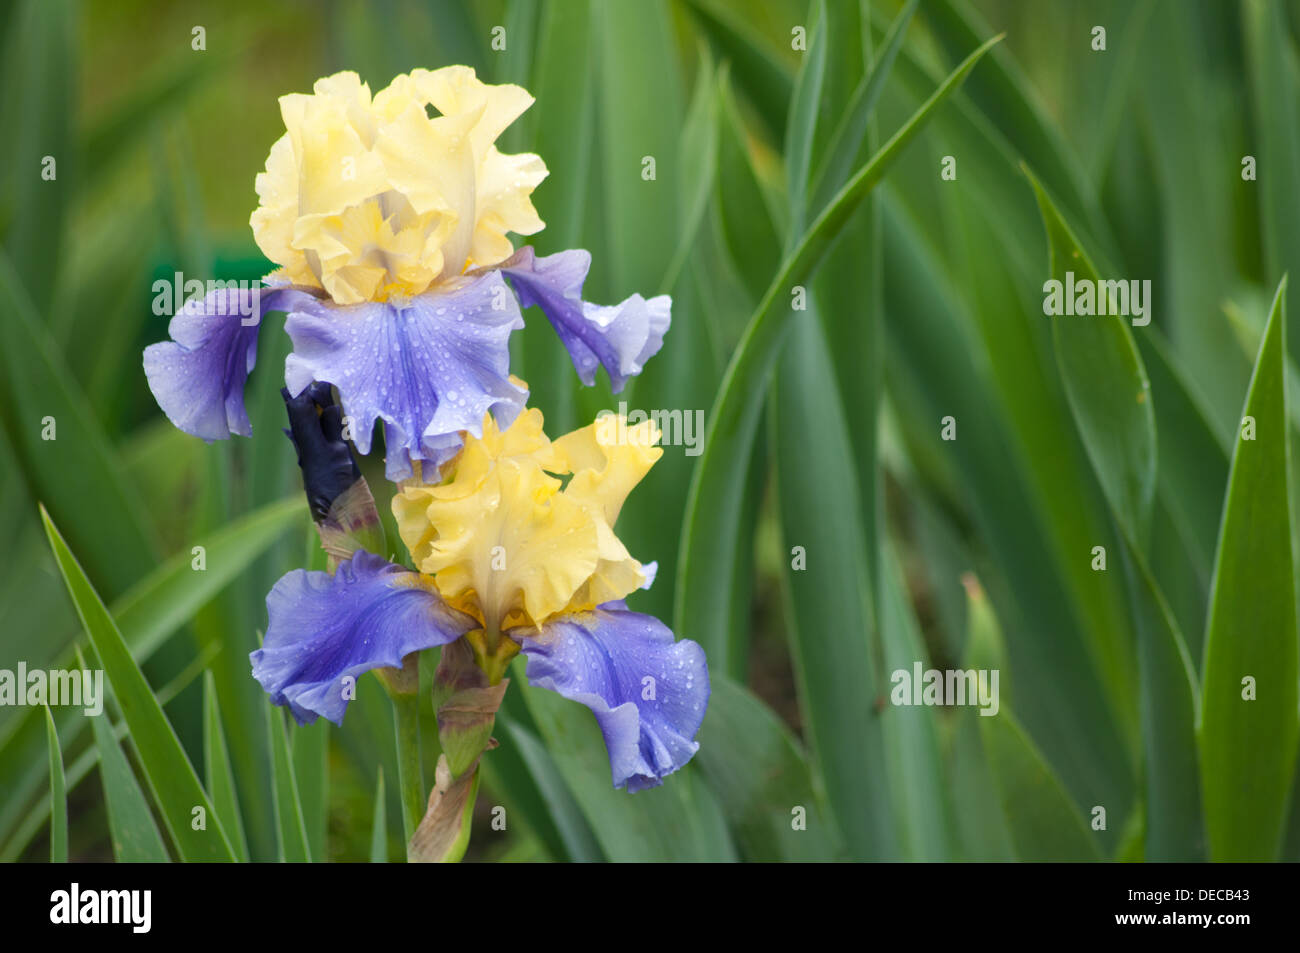 zwei nass gelbe und blaue Iris auf einem grünen Blättern Hintergrund Stockfoto